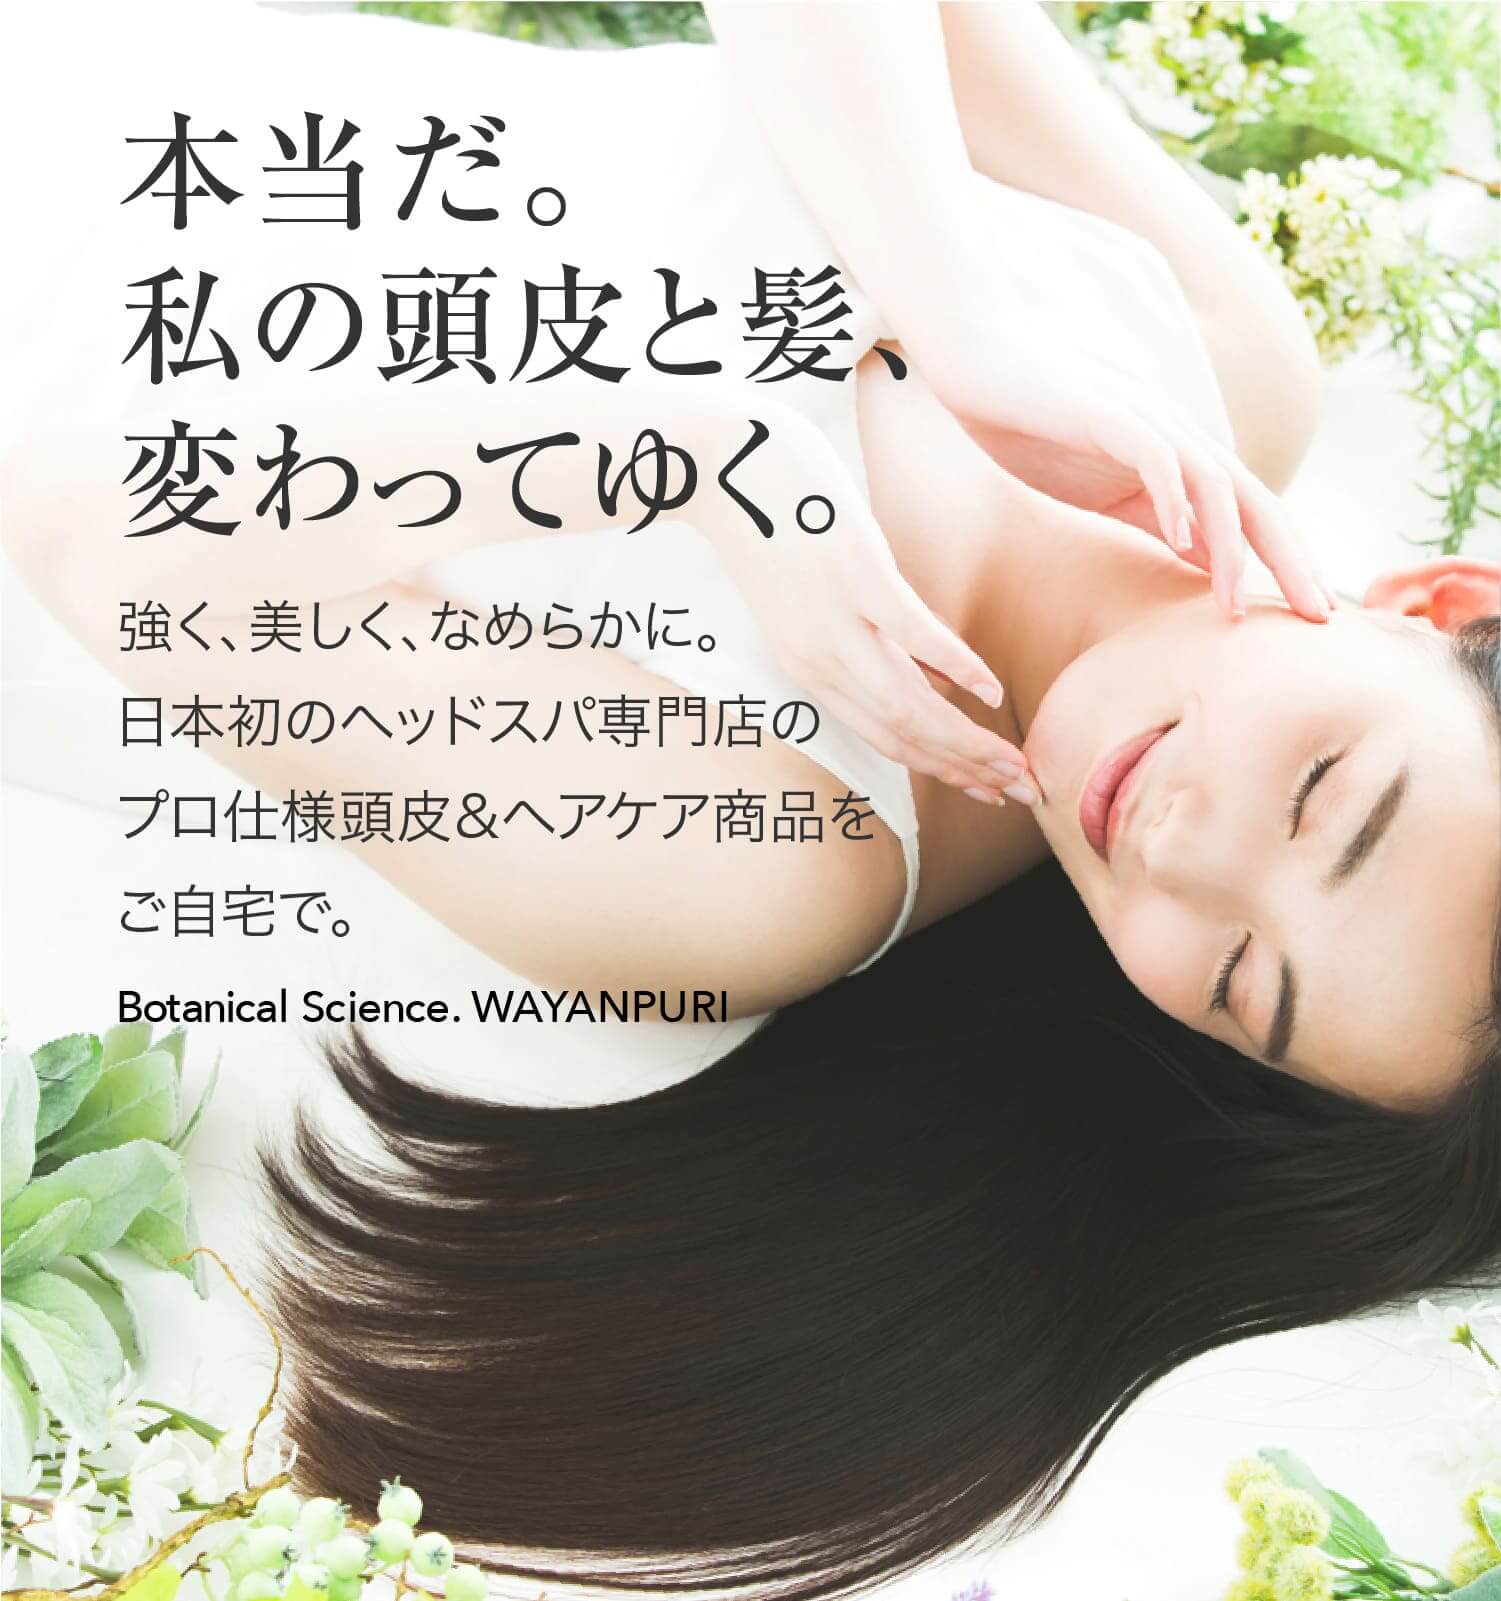 本当だ。私の髪、変わってゆく。強く、美しく、なめらかに。日本初のヘッドスパ専門店のプロ仕様ヘアケア商品をご自宅で。Botanical Science. WAYANPURI